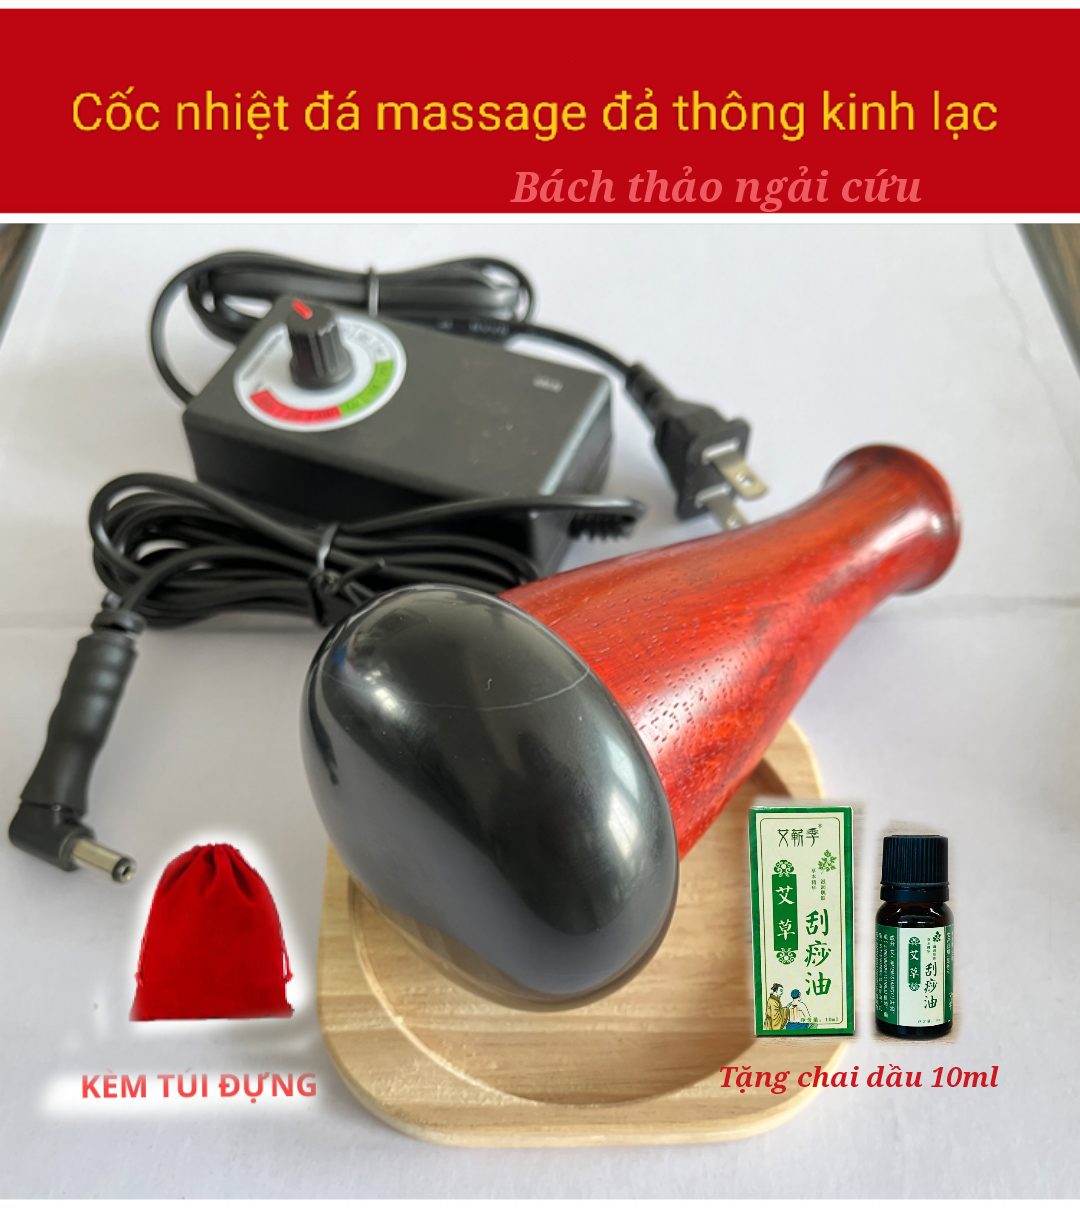 Dụng cụ Massage đá nóng Body, Cốc Đá Nóng Đả Thông Kinh Lạc, Máy Đá Nóng Massage Chỉnh Nhiệt Độ Dưỡng Sinh